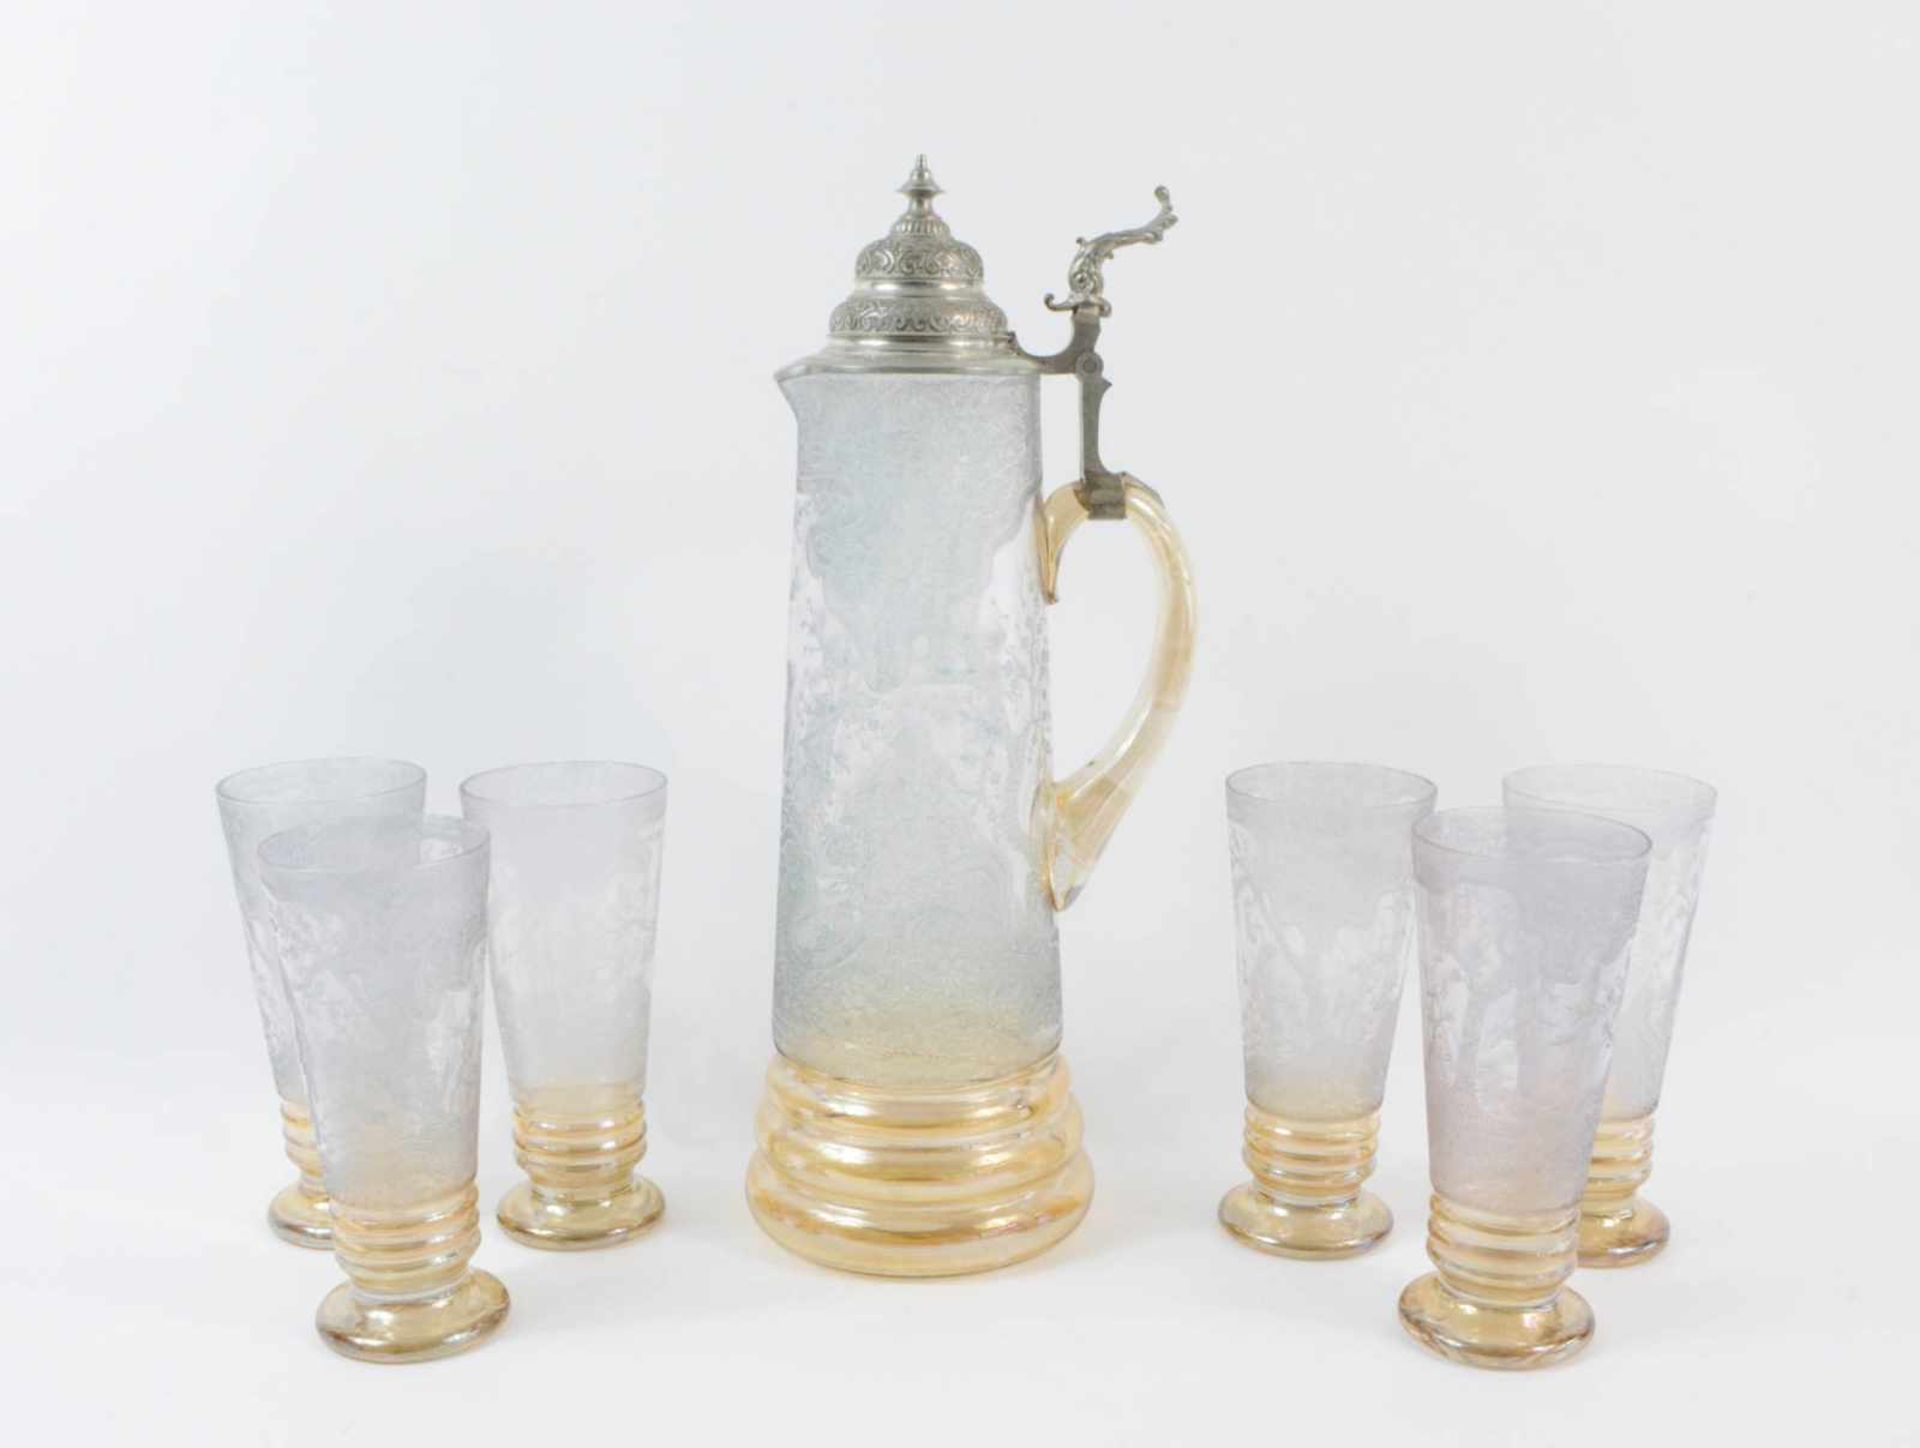 Großer Glaskrug mit Zinndeckel und 6 Gläser Deutschland, um 1890, Glas und Zinnmontierung, die